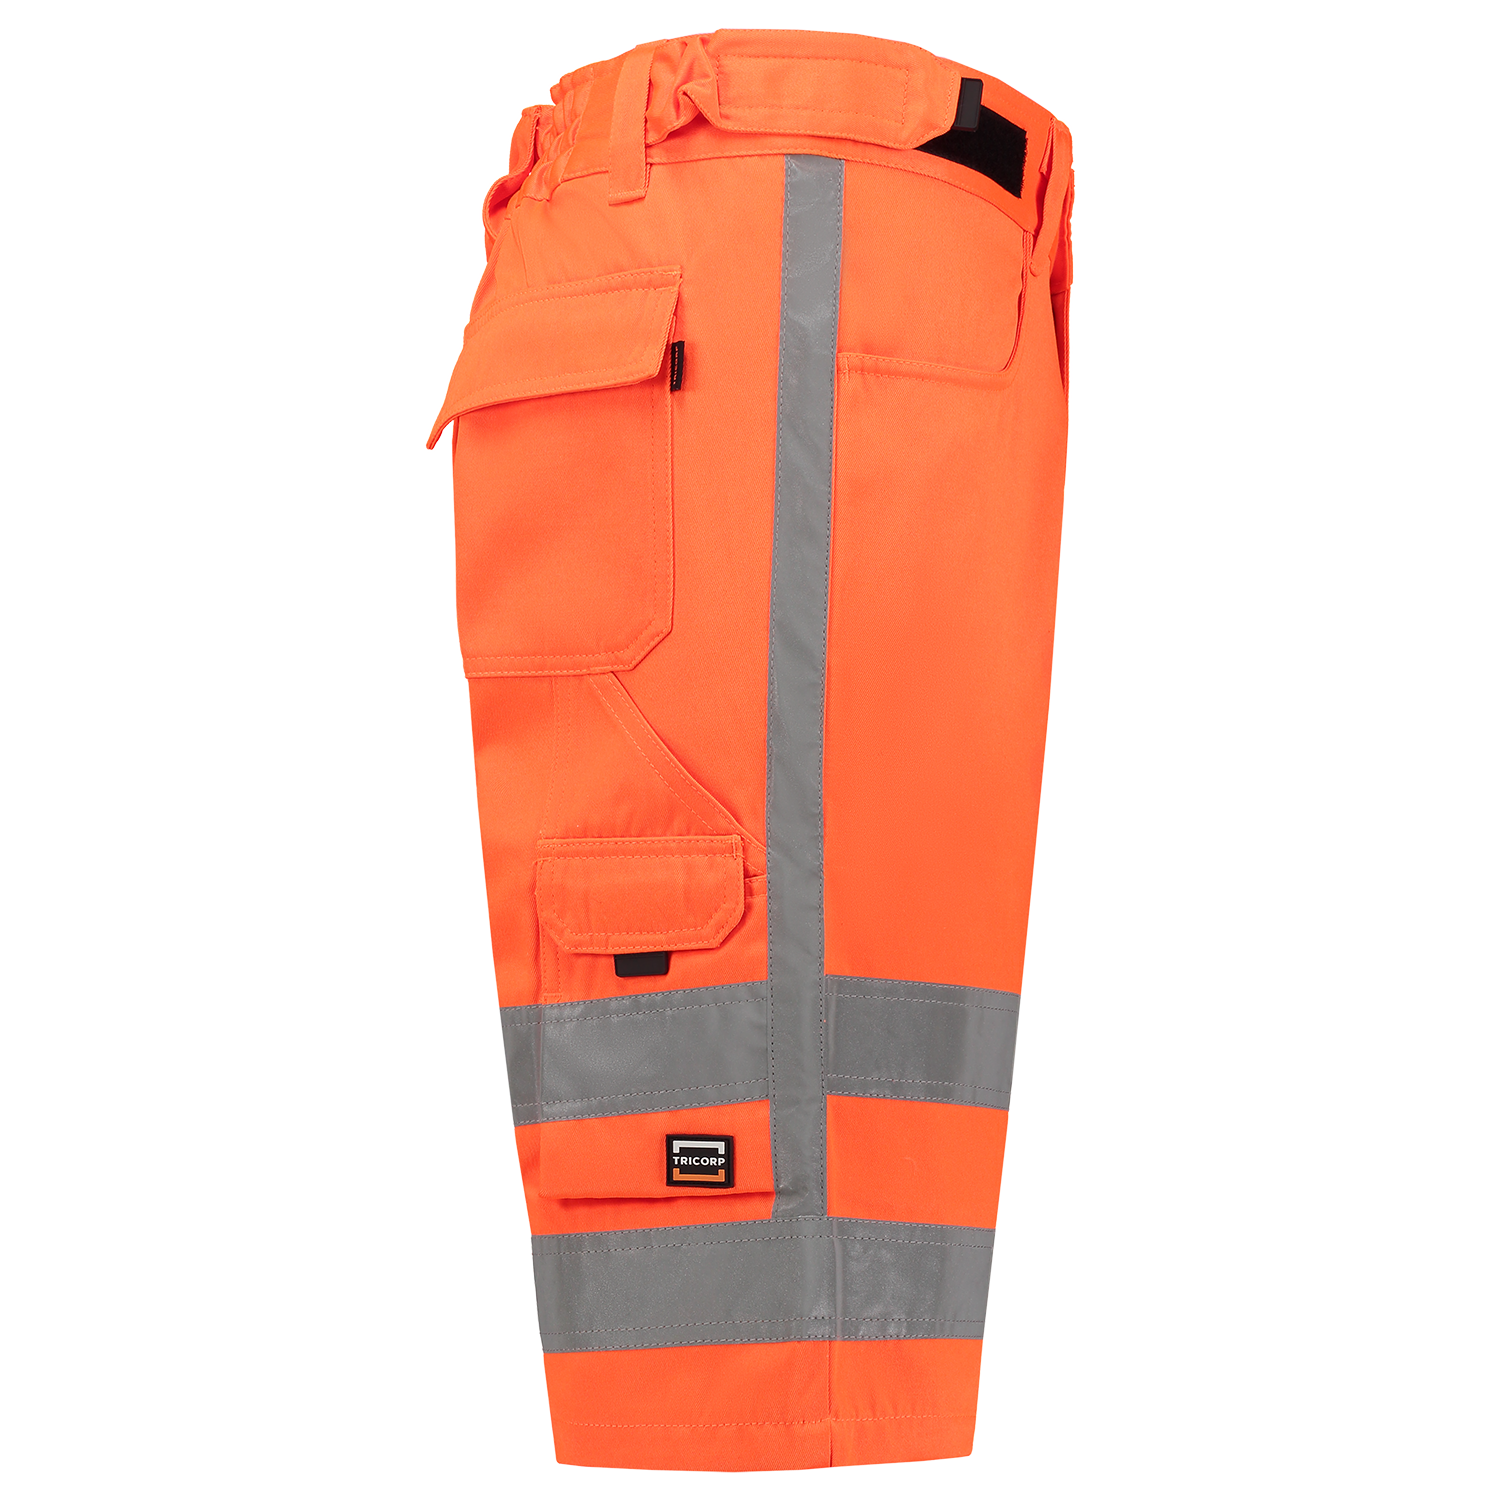 Work trousers RWS - EN ISO 20471 Short